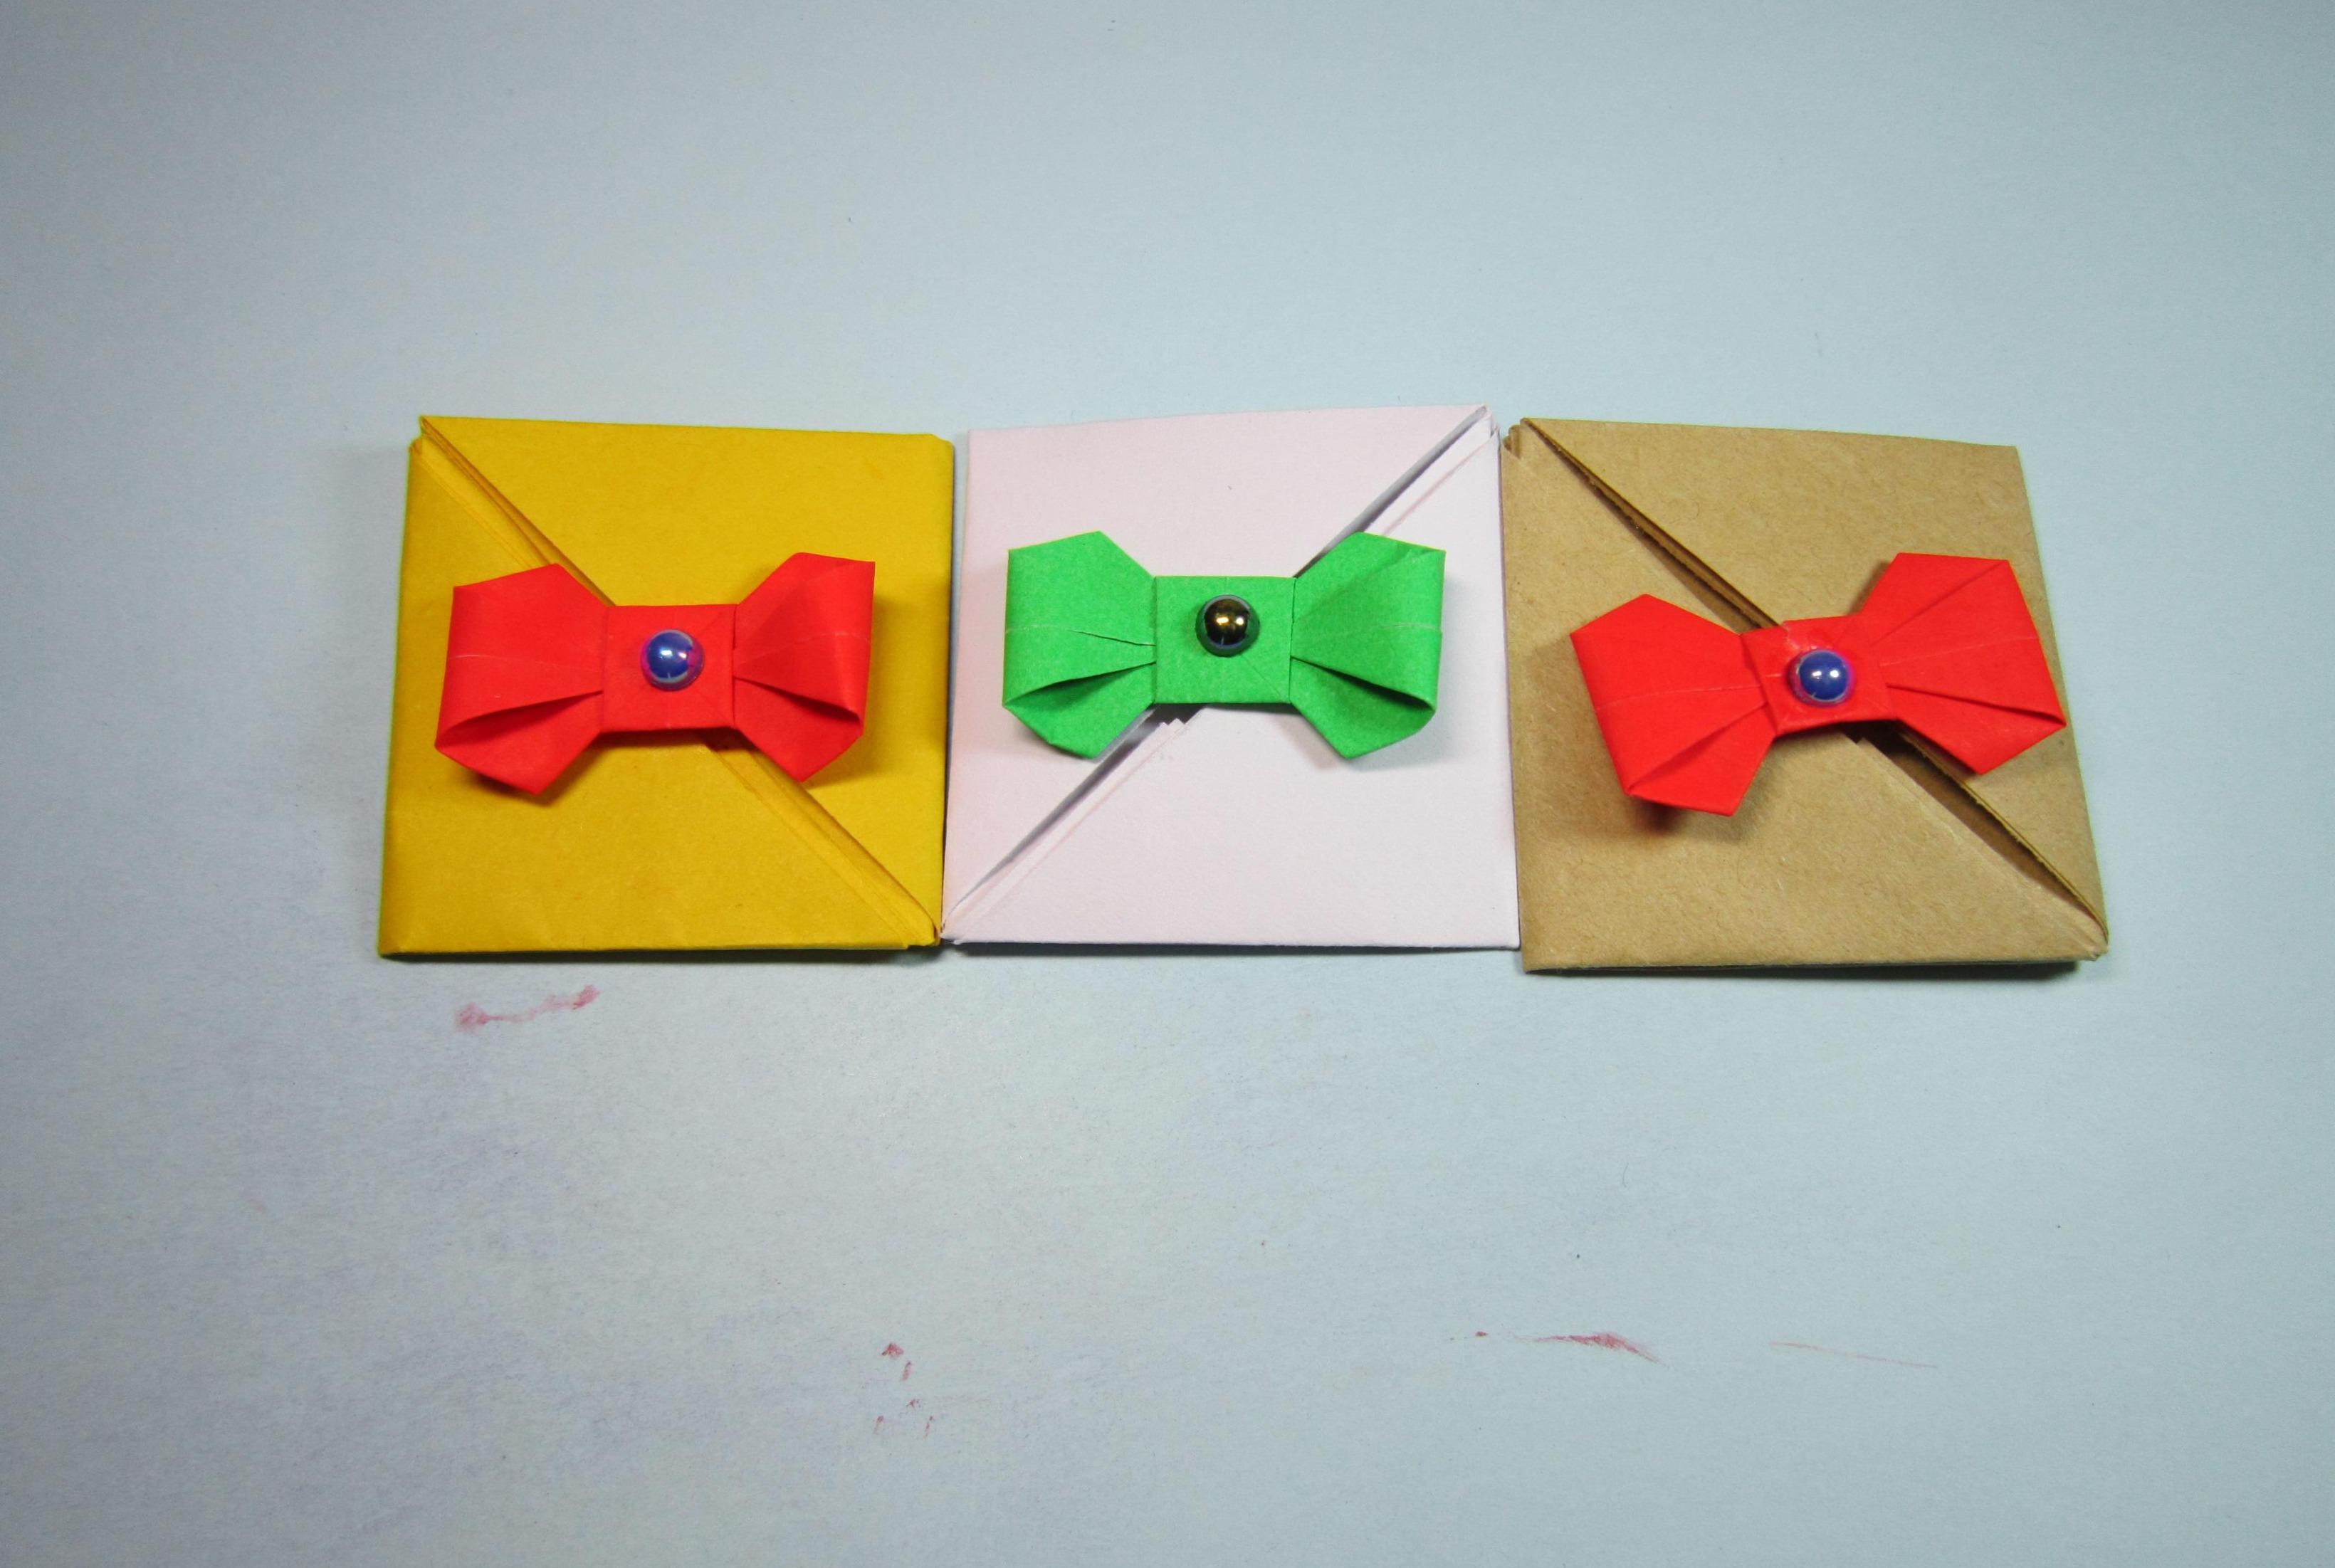 视频:手把手教你折纸信封,2分钟就能折出简单漂亮的情书信封